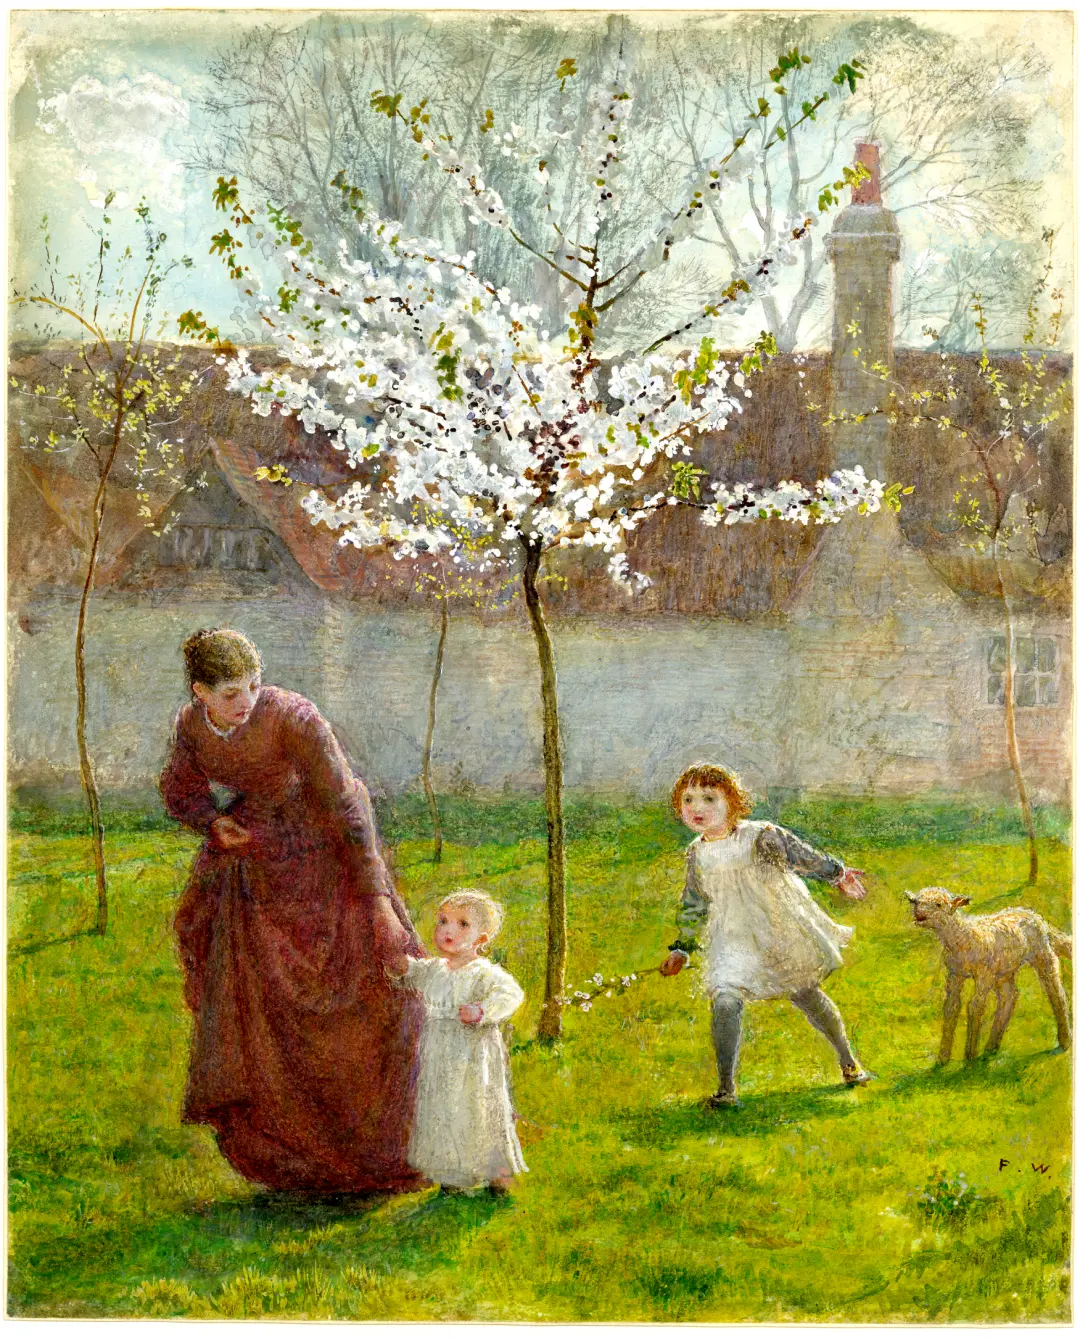 弗雷德里克·沃克 (Frederick Walker，1840-1875)，《生命之春》，水彩画，1866，英国。